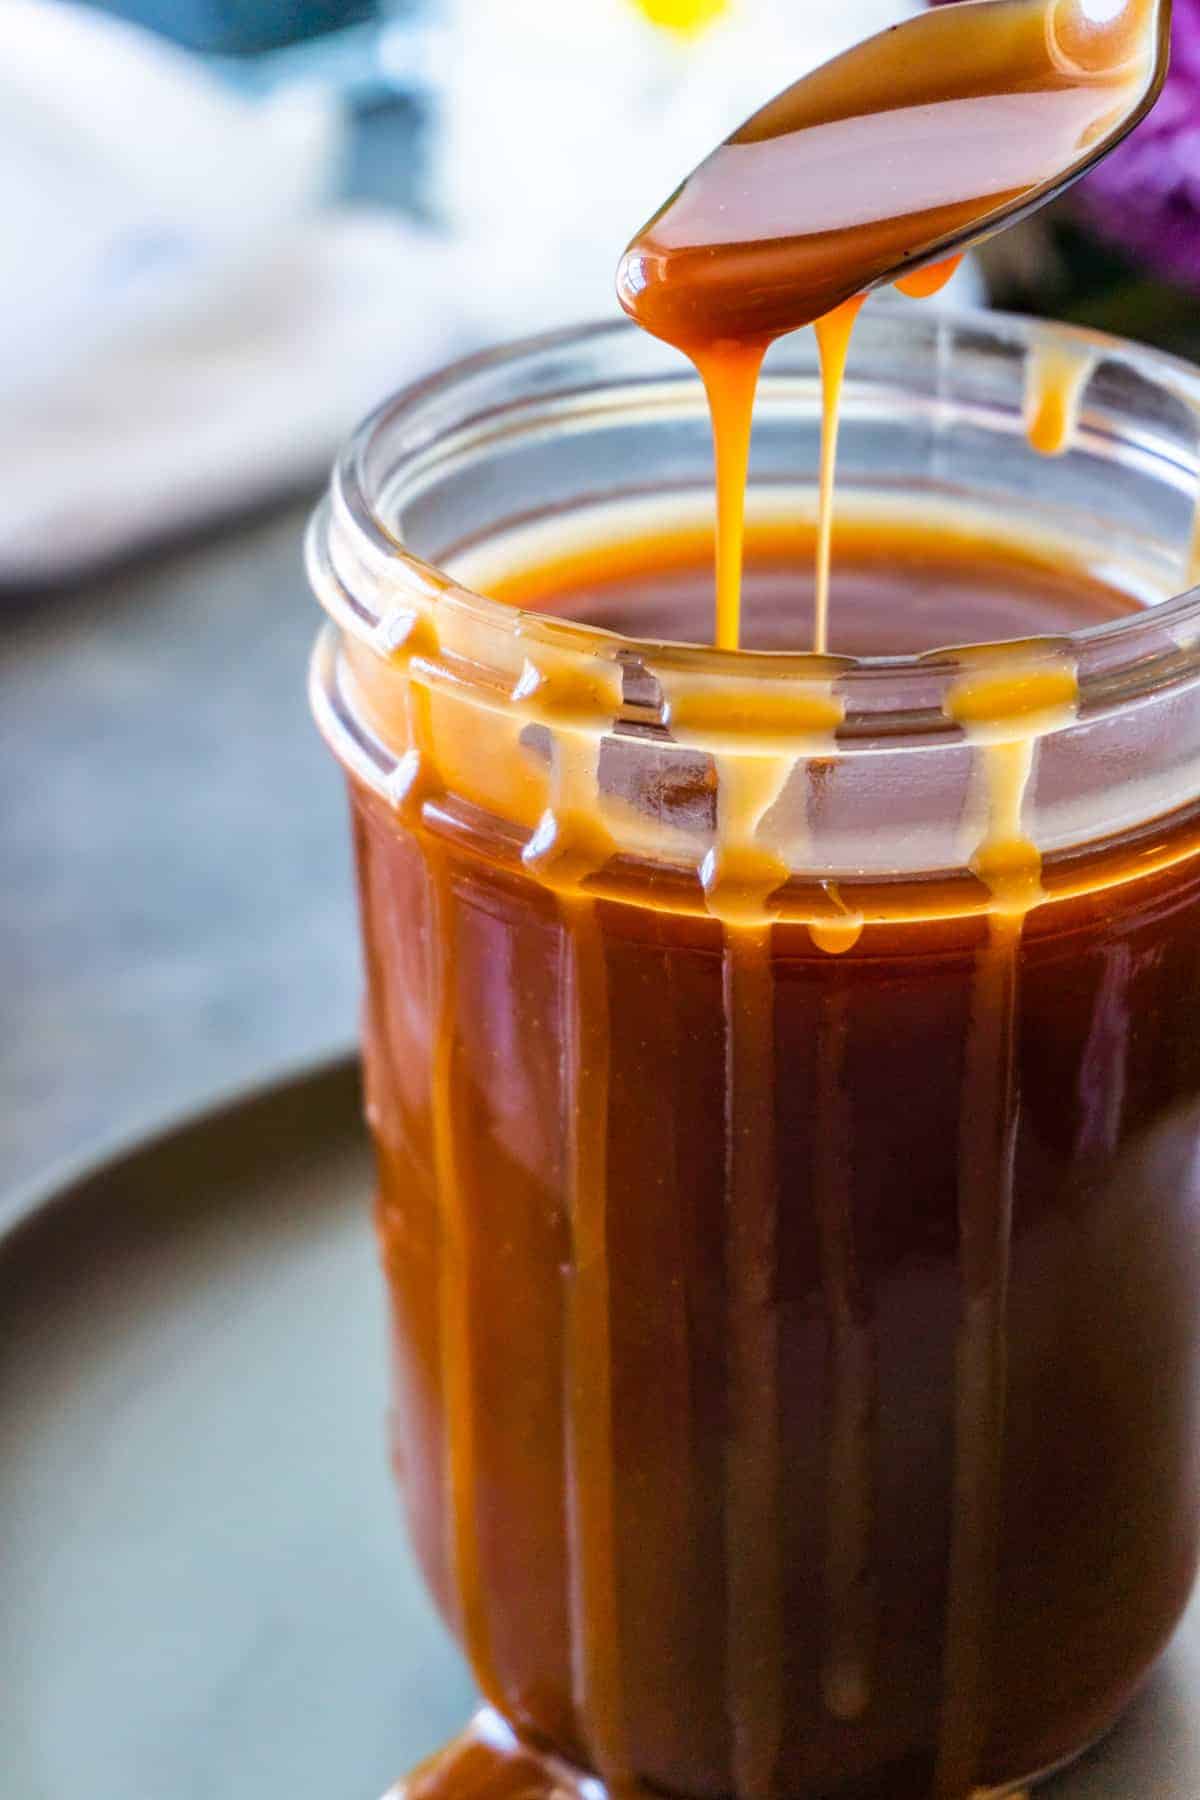 Caramel in a jar close up